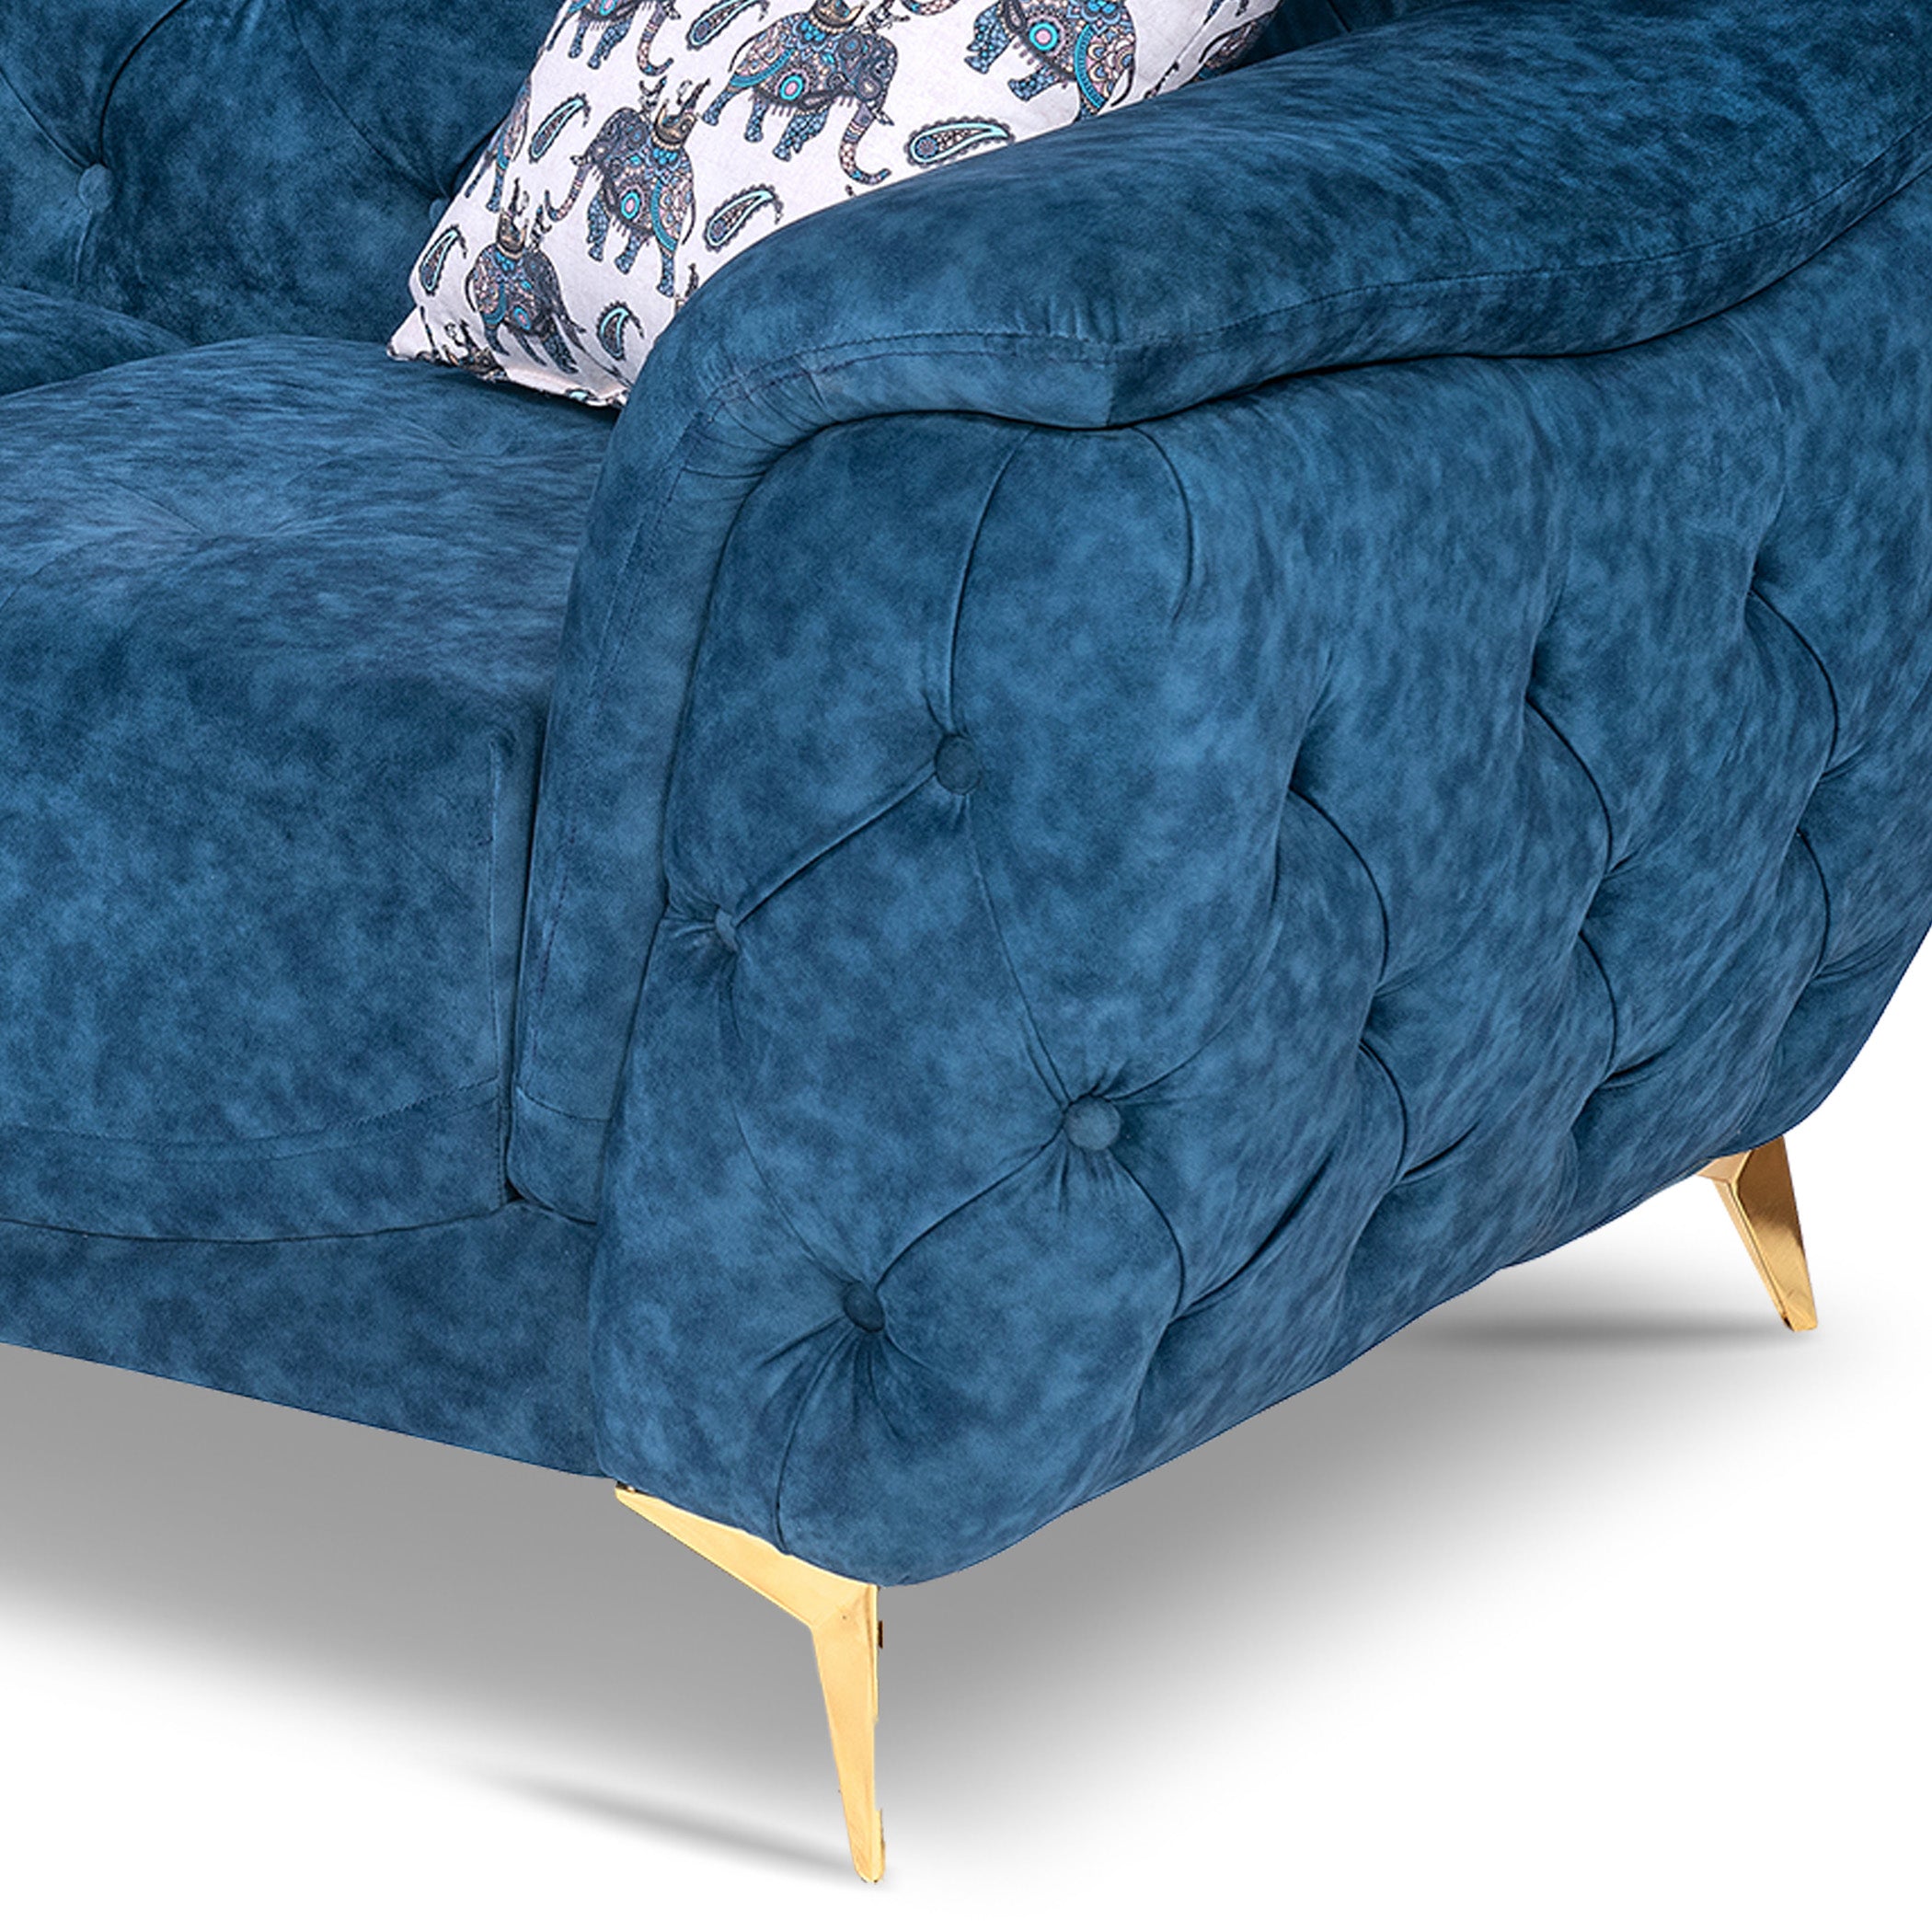 Denmark TexturedBlue 3S Sofa by Zorin Zorin